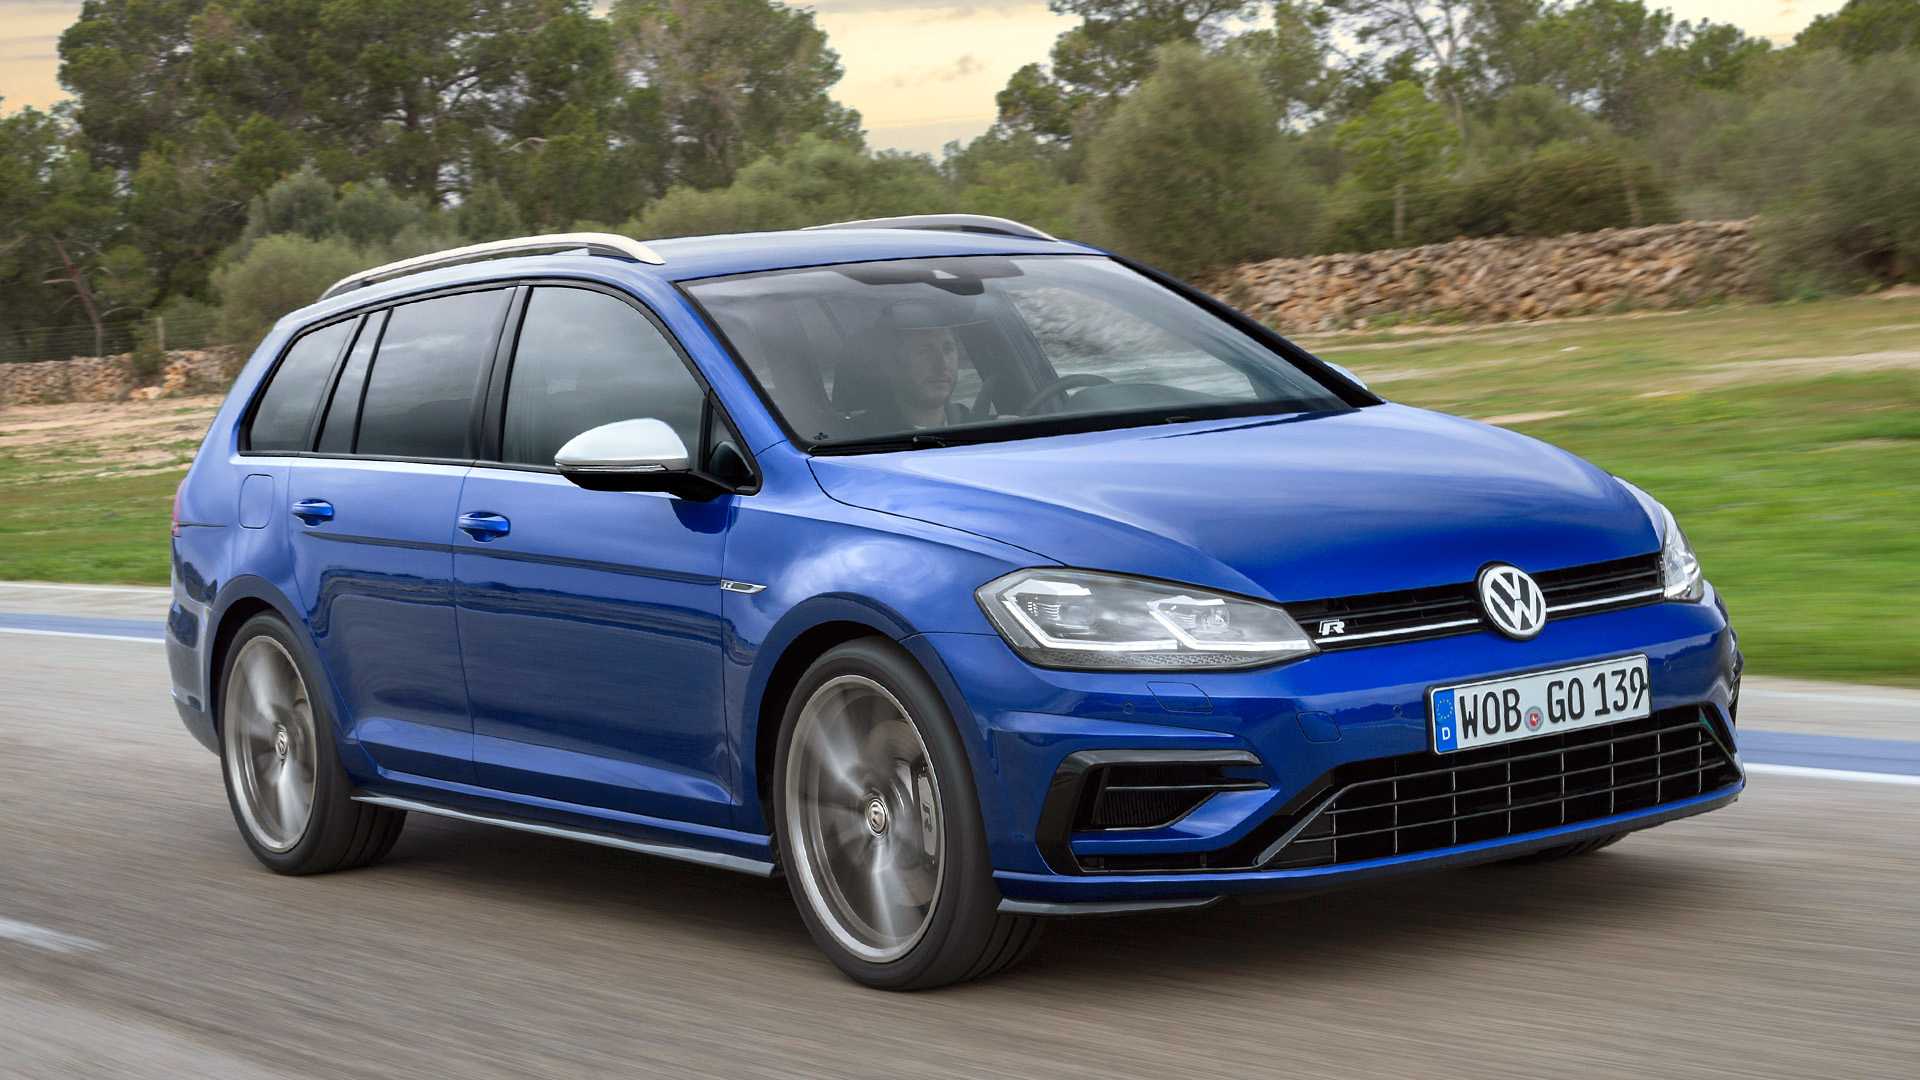 2020 yeni Volkswagen Golf station wagon seçeneği ile geliyor